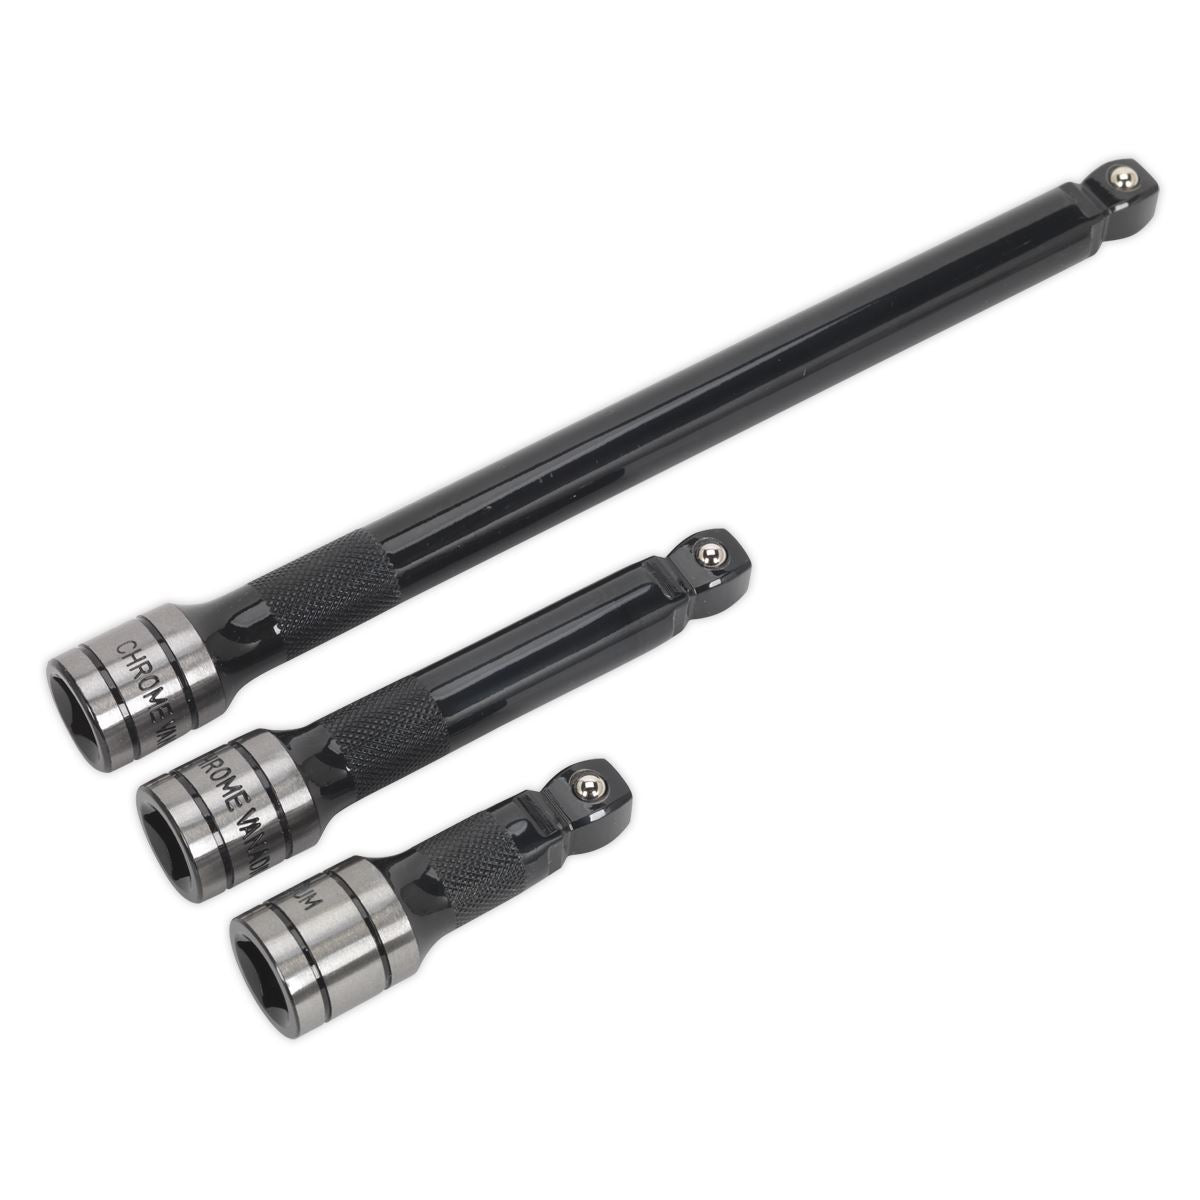 Sealey Premier Black 3 Piece 1/2" Drive Wobble Rigid Extension Bar Set Sockets